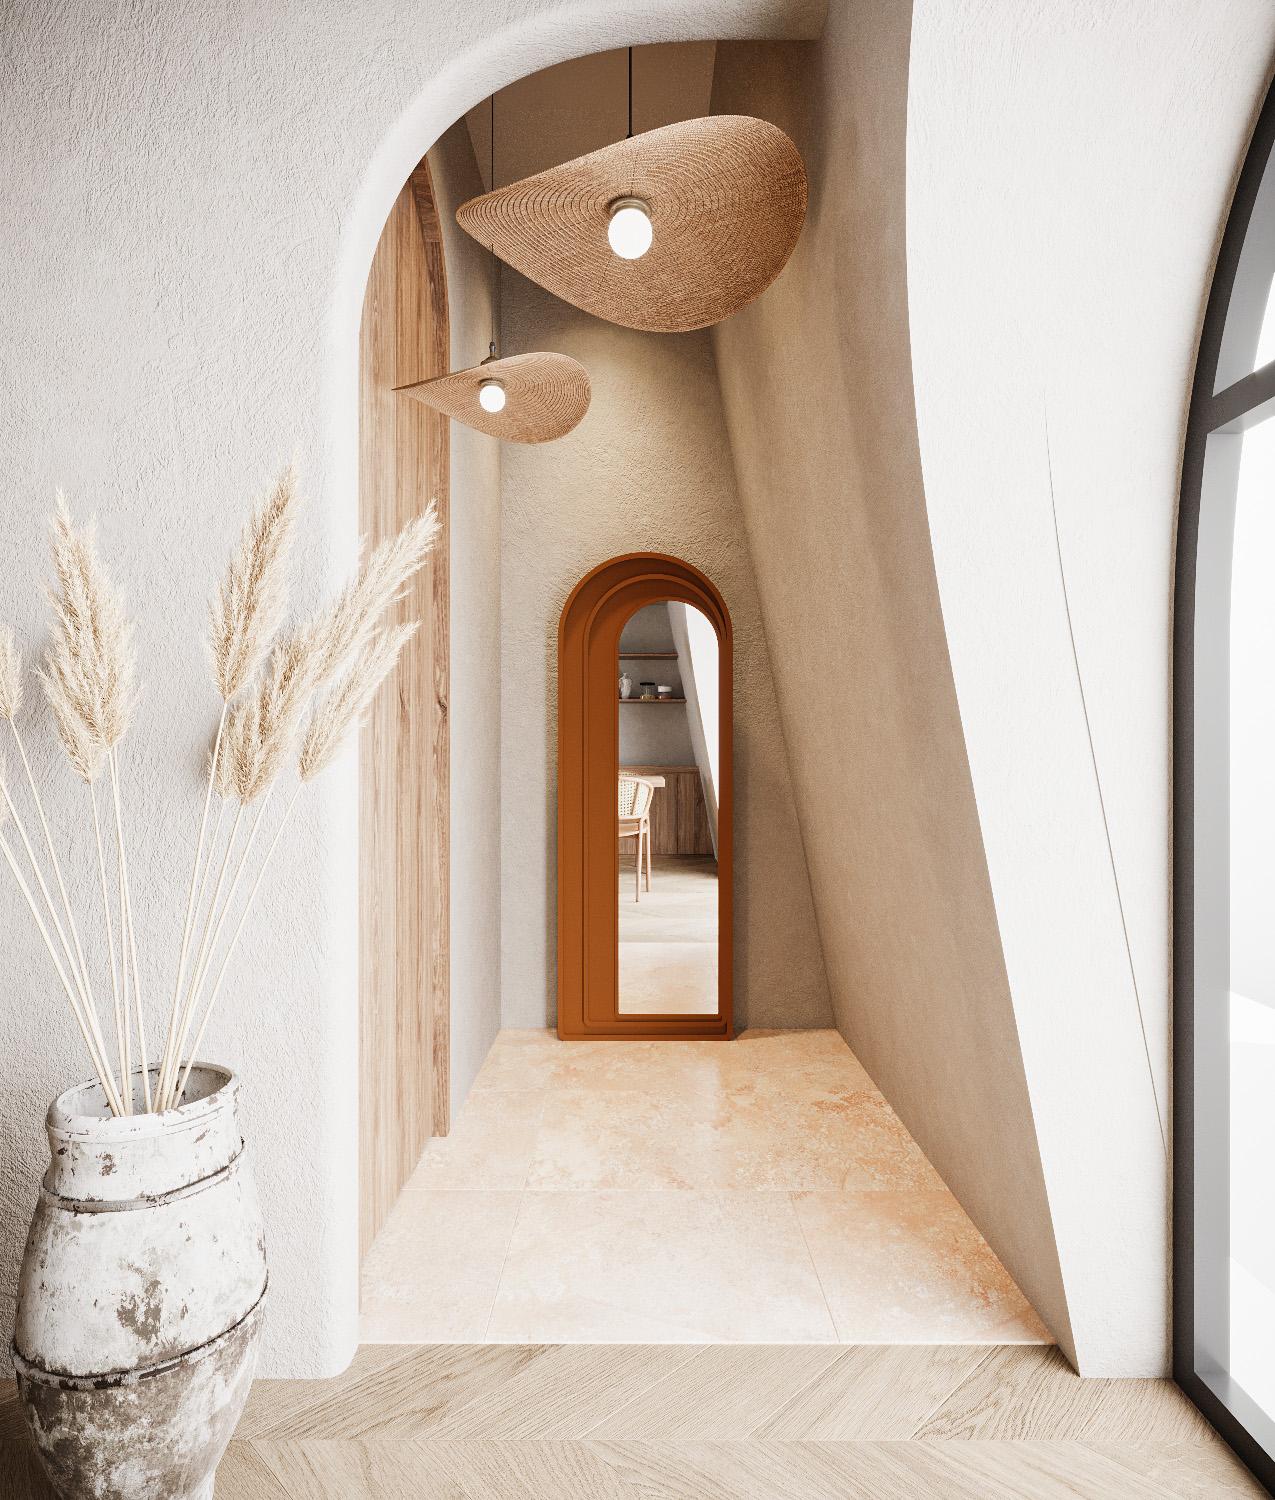 Designer: Selkan SOLMAZ ERÇEL

Der Sevilla-Spiegel wurde unter dem Einfluss der arabischen Architektur Südspaniens entworfen und der modernen Architektur Portugals vorgestellt. So können Sie Ihre Räume individuell gestalten.

Das Produkt wird in